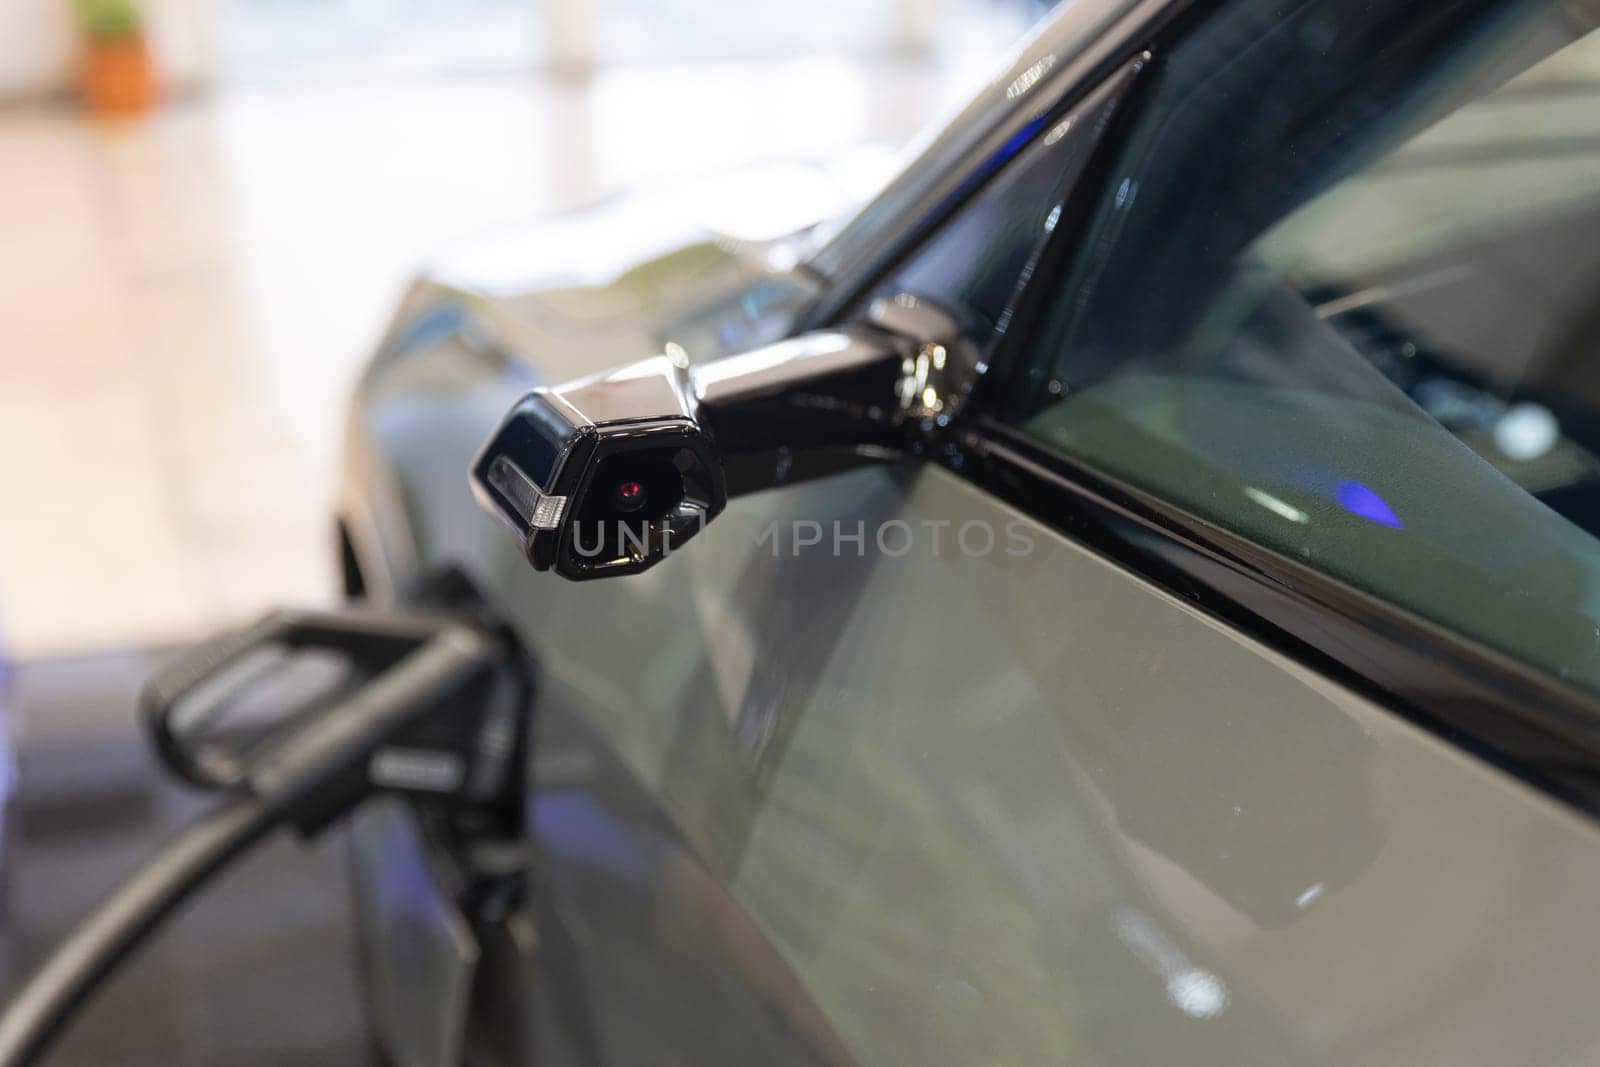 A close up of a car's fuel pump